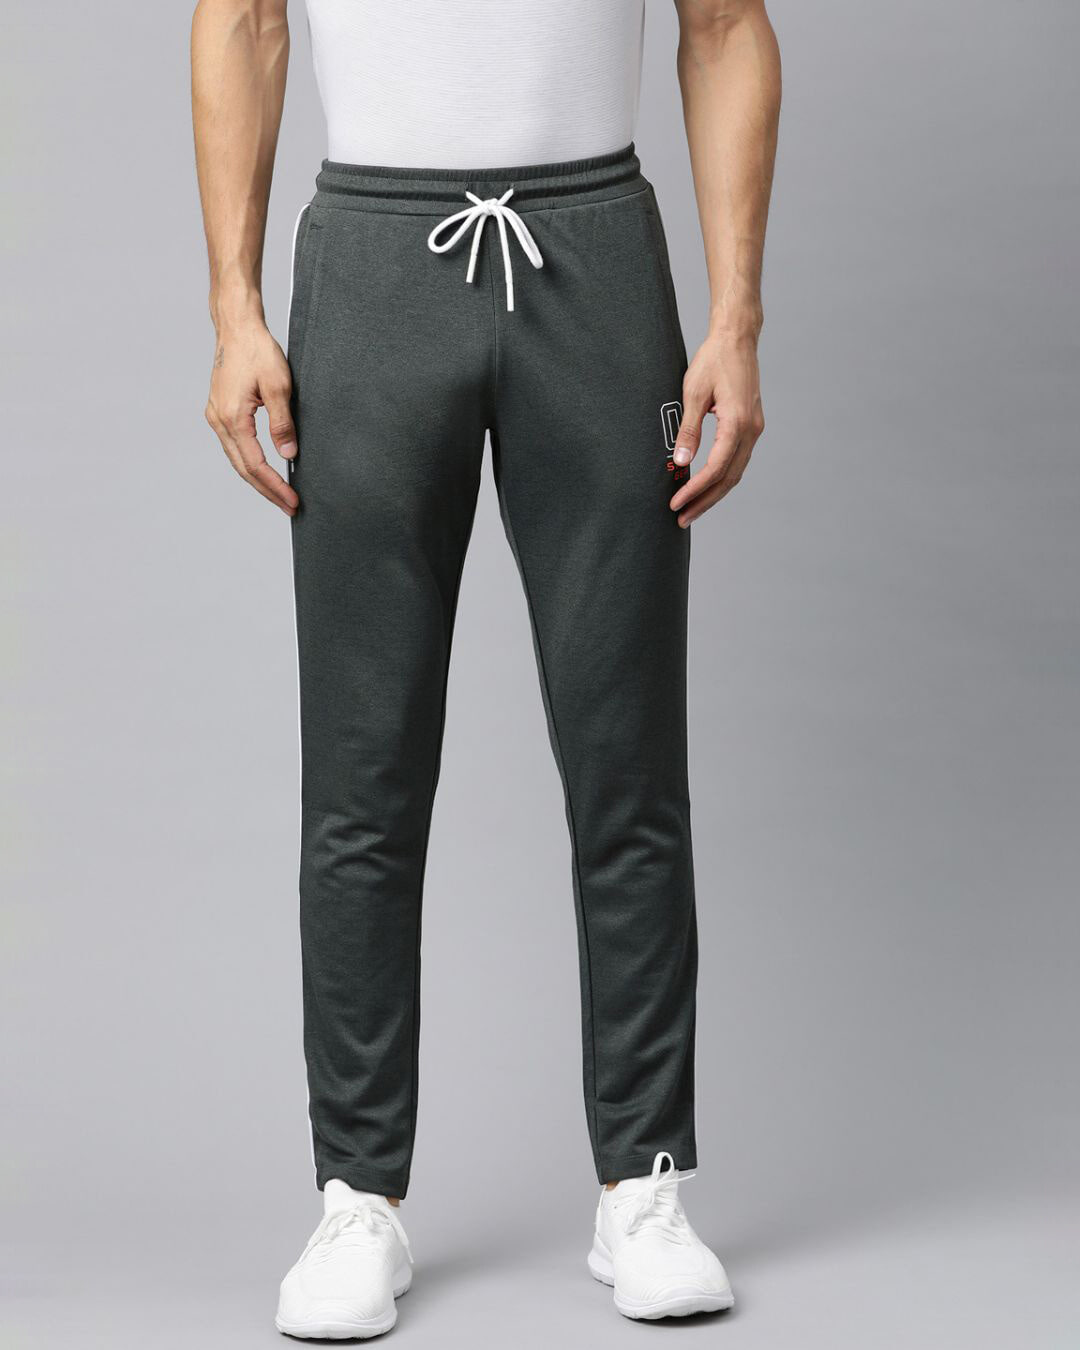 Buy Men's Charcoal Grey Solid Track Pants for Men Grey Online at Bewakoof